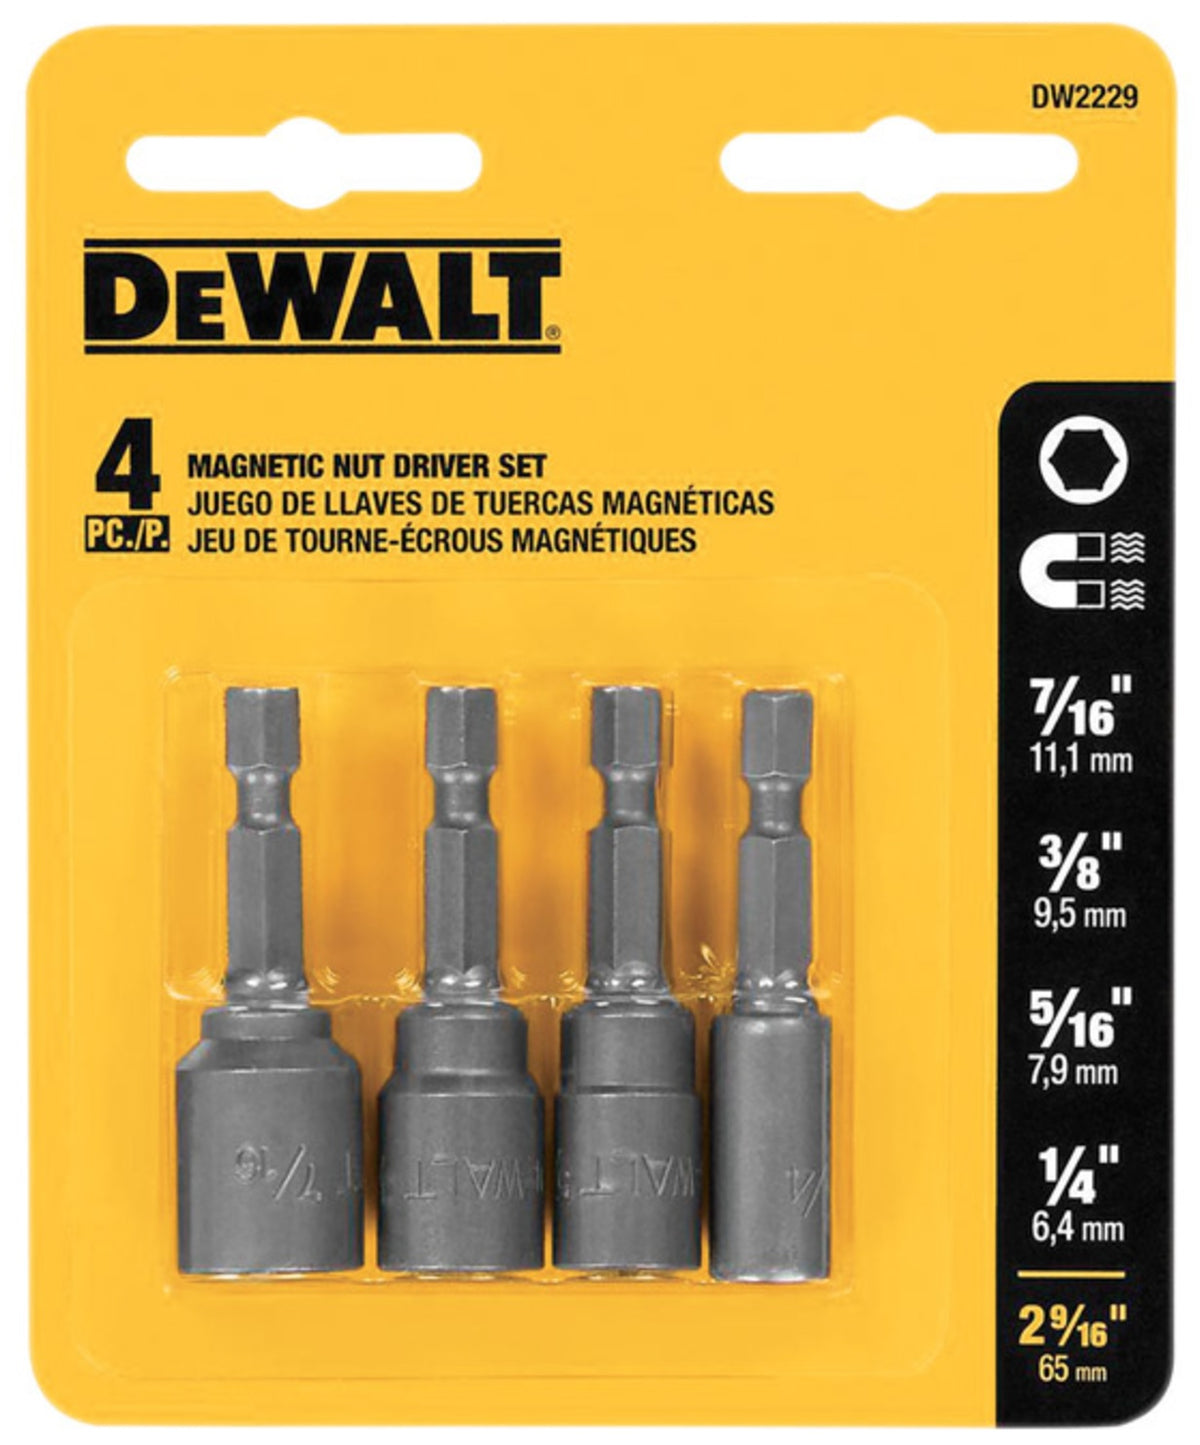 DeWalt DW2229 Magnetic Nut Setter Set, 2-9/16"